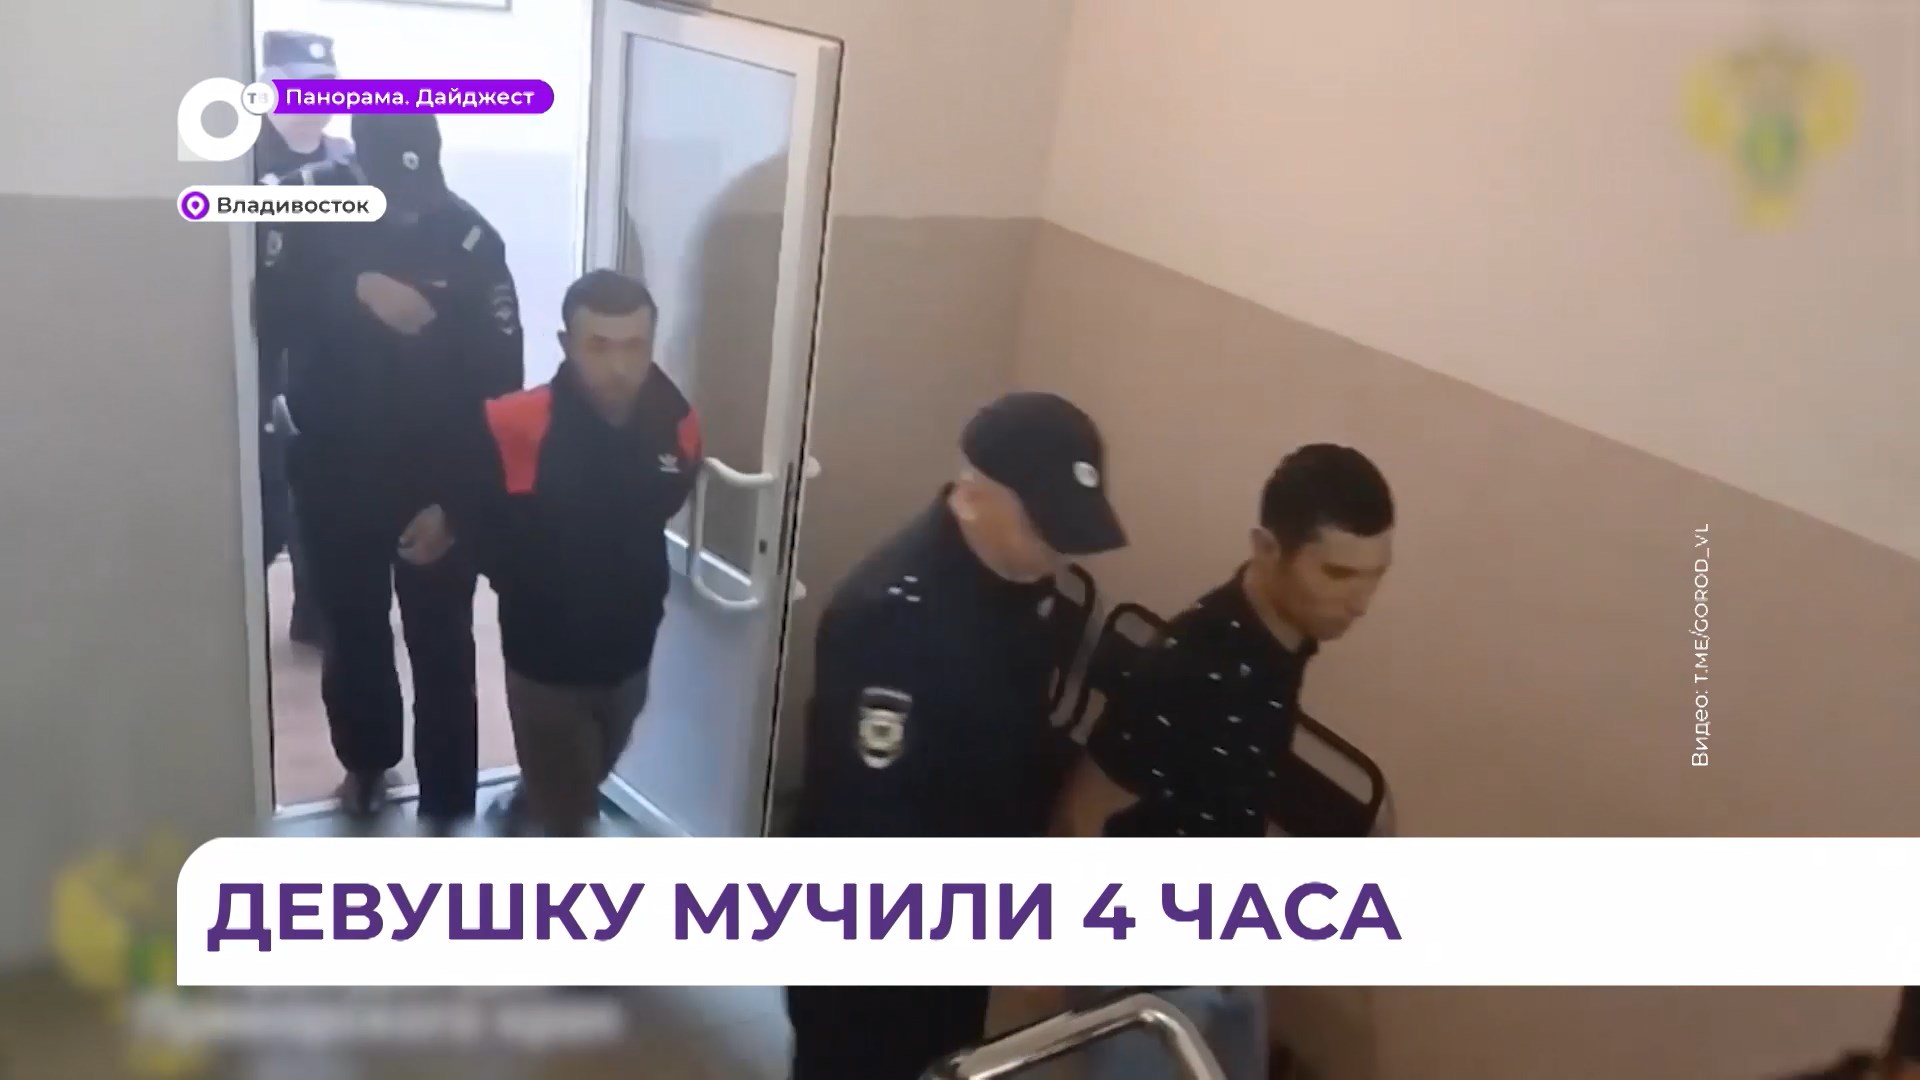 Следователи возбудили уголовное дело о групповом изнасиловании в пригороде Владивостока